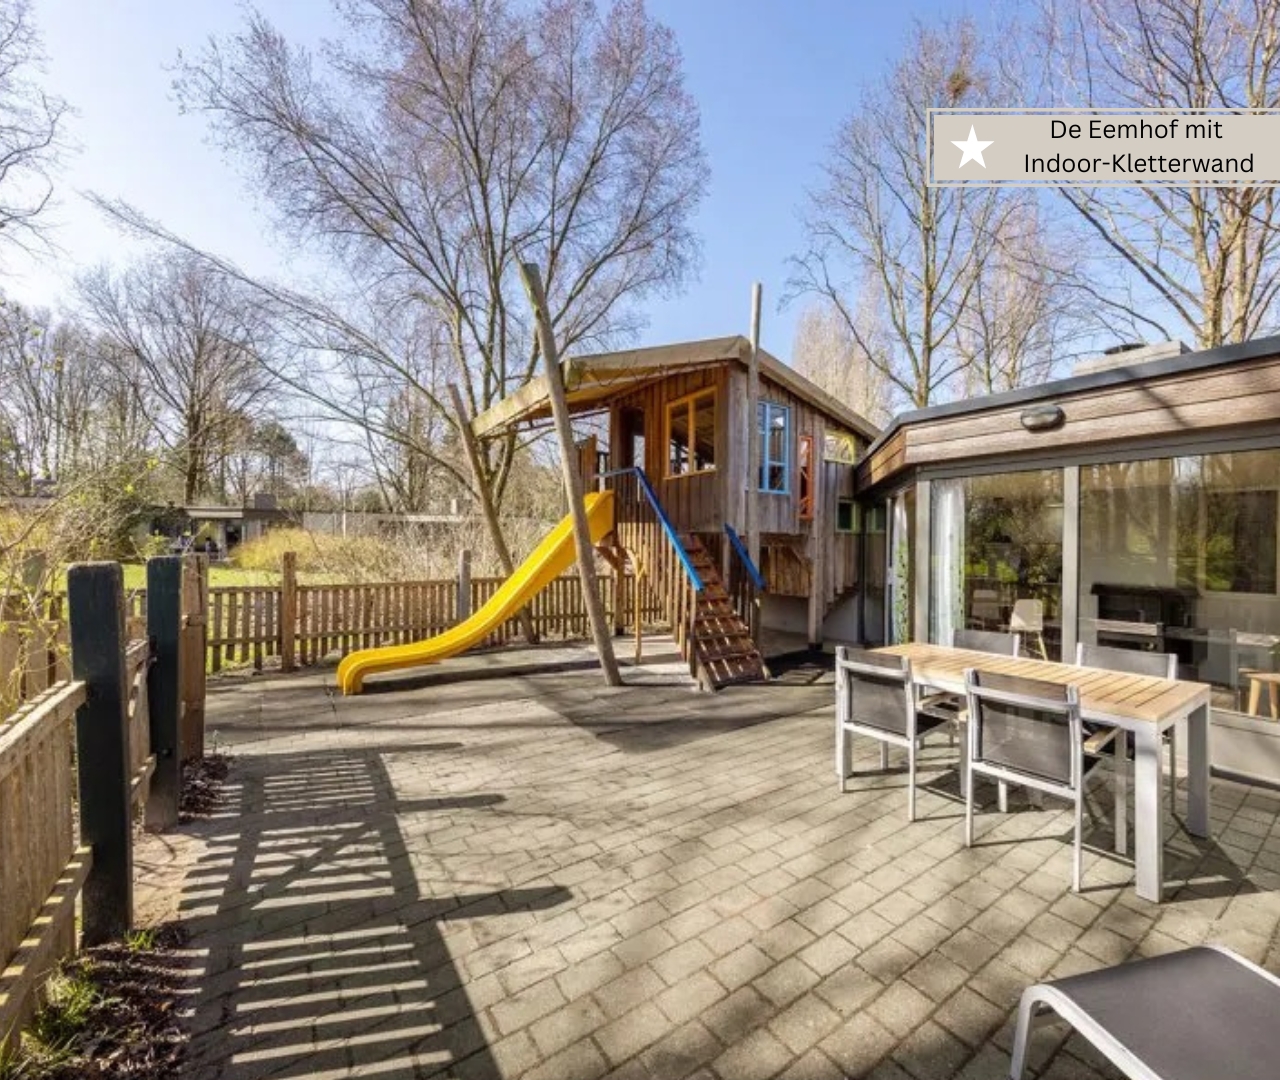 beste Ferienparks in Holland - Marina de Eemhof mit Kinderferienhaus und Zaun